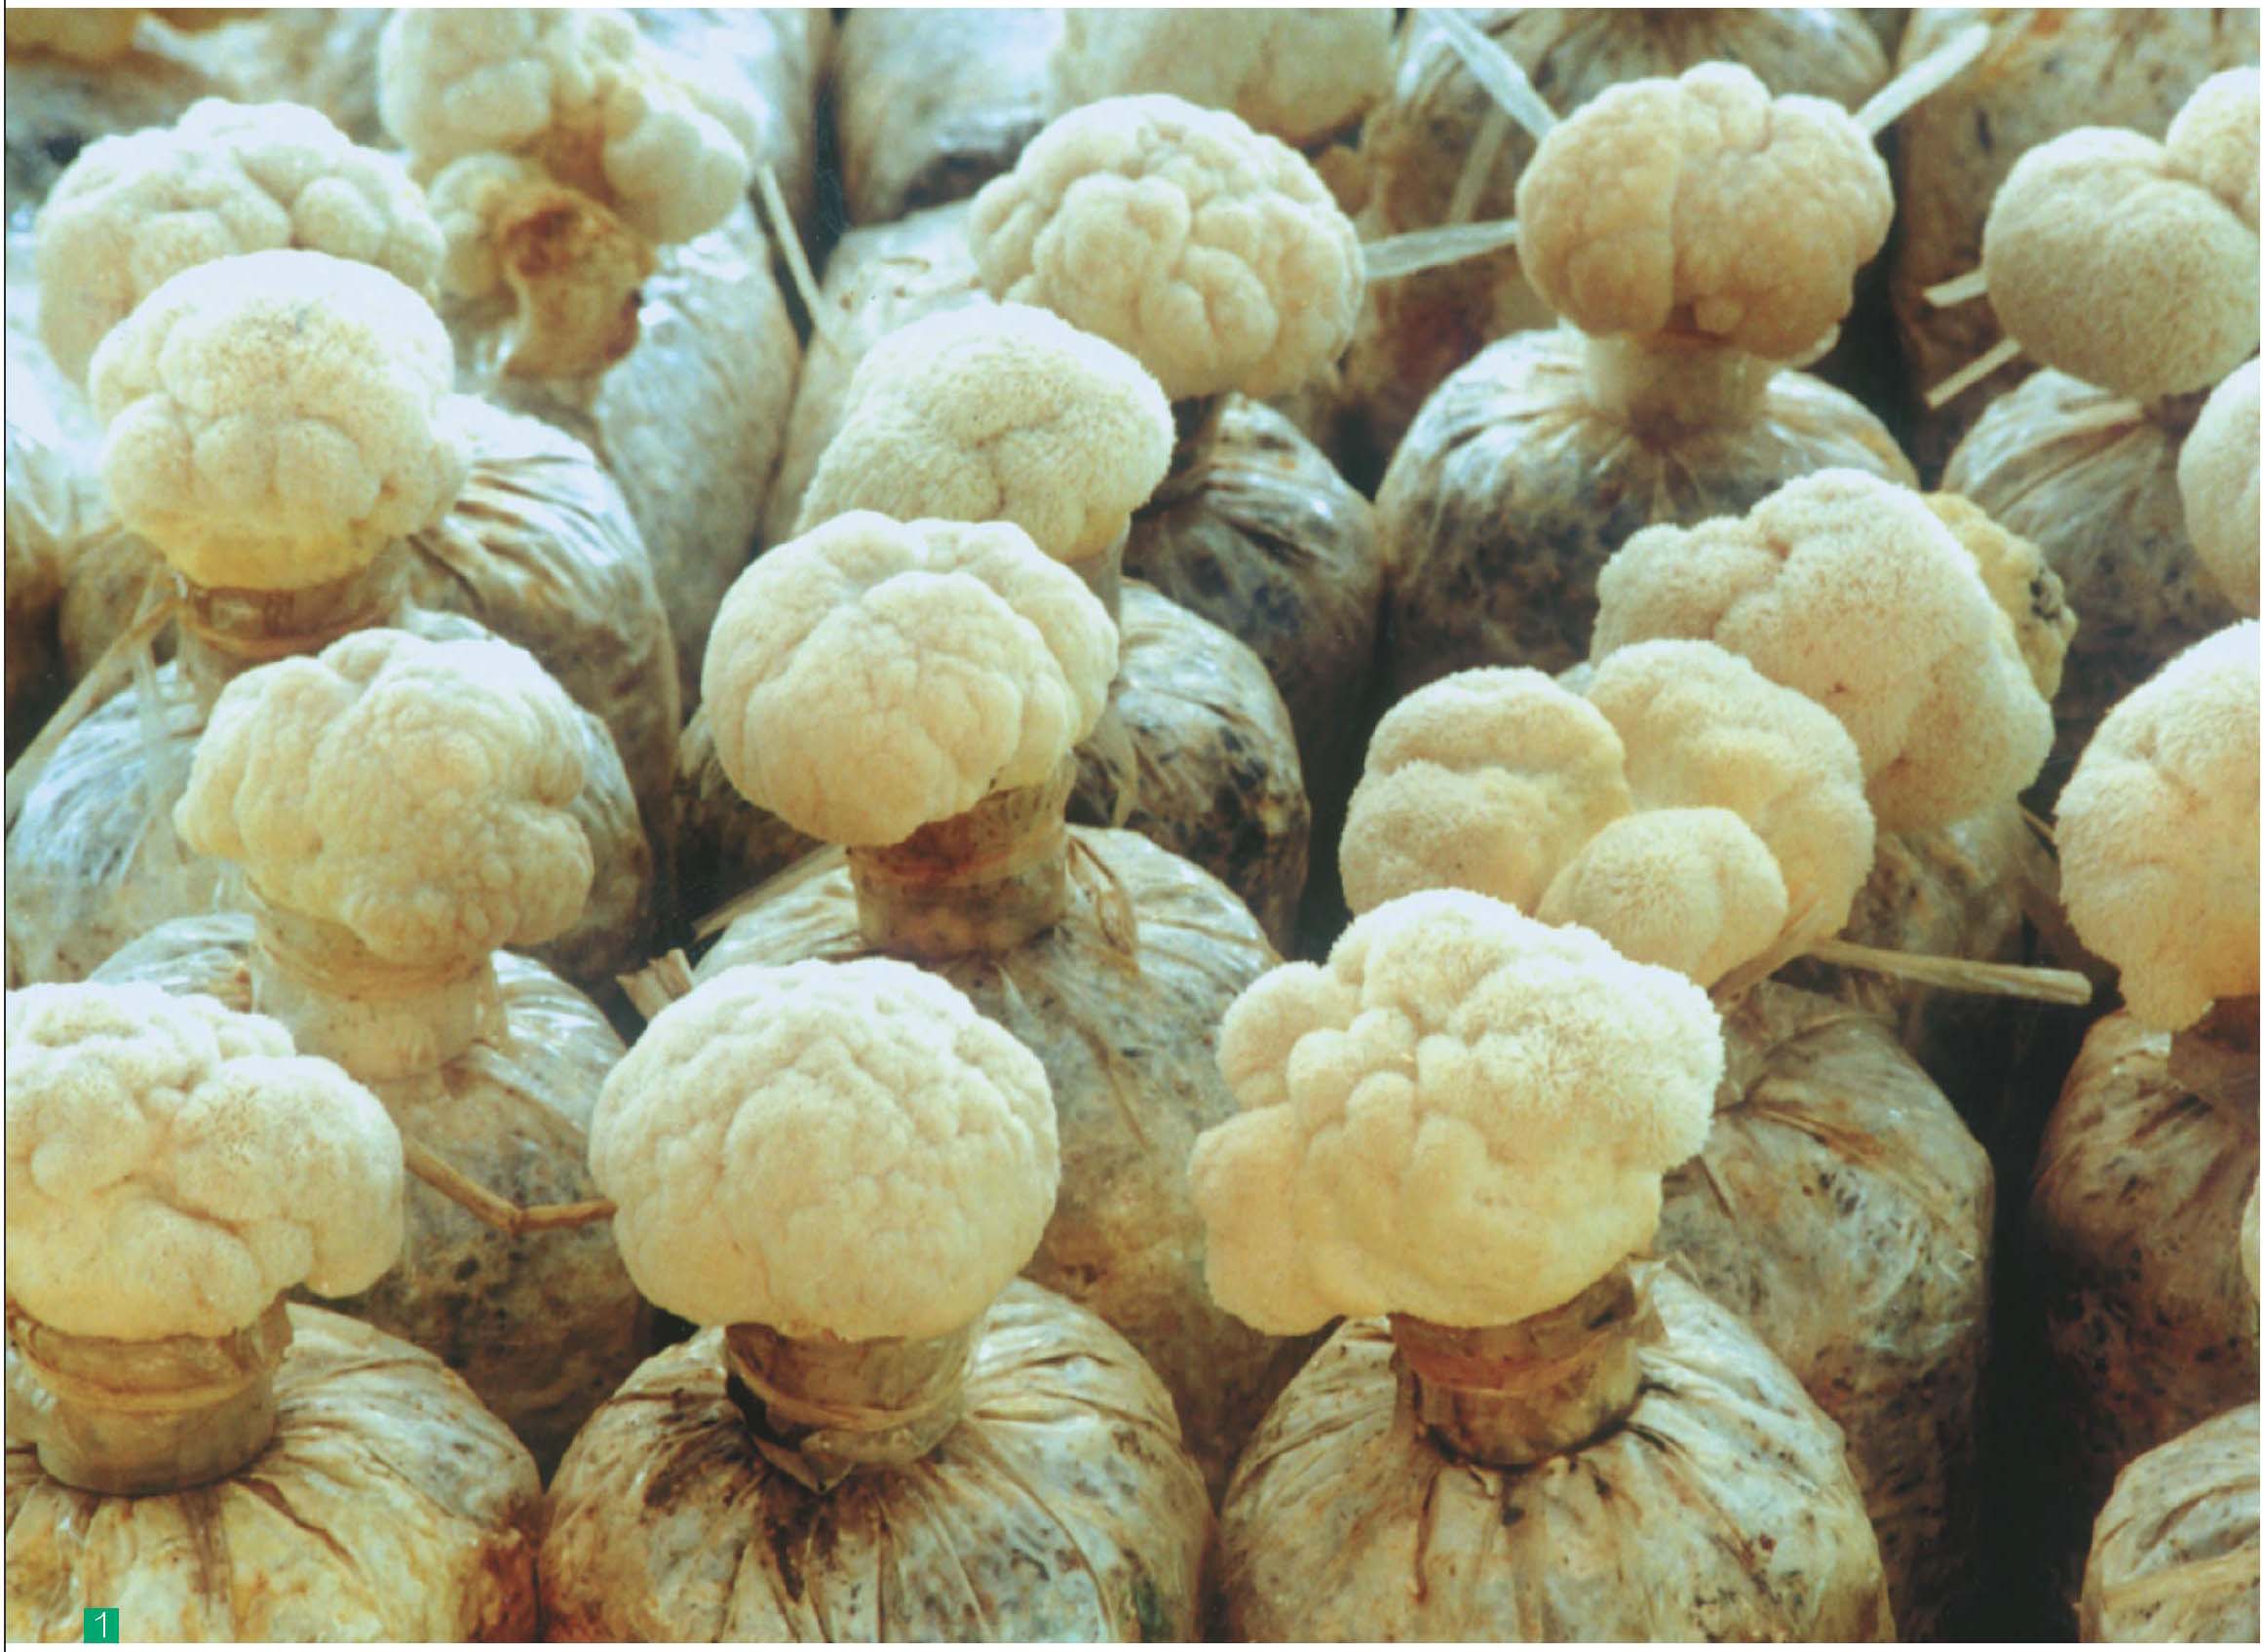 桦树茶菇在民药中用于茶或咖啡的愈合 库存图片. 图片 包括有 模式, 本质, 金属, 健康, 手帕, 概念 - 173044585